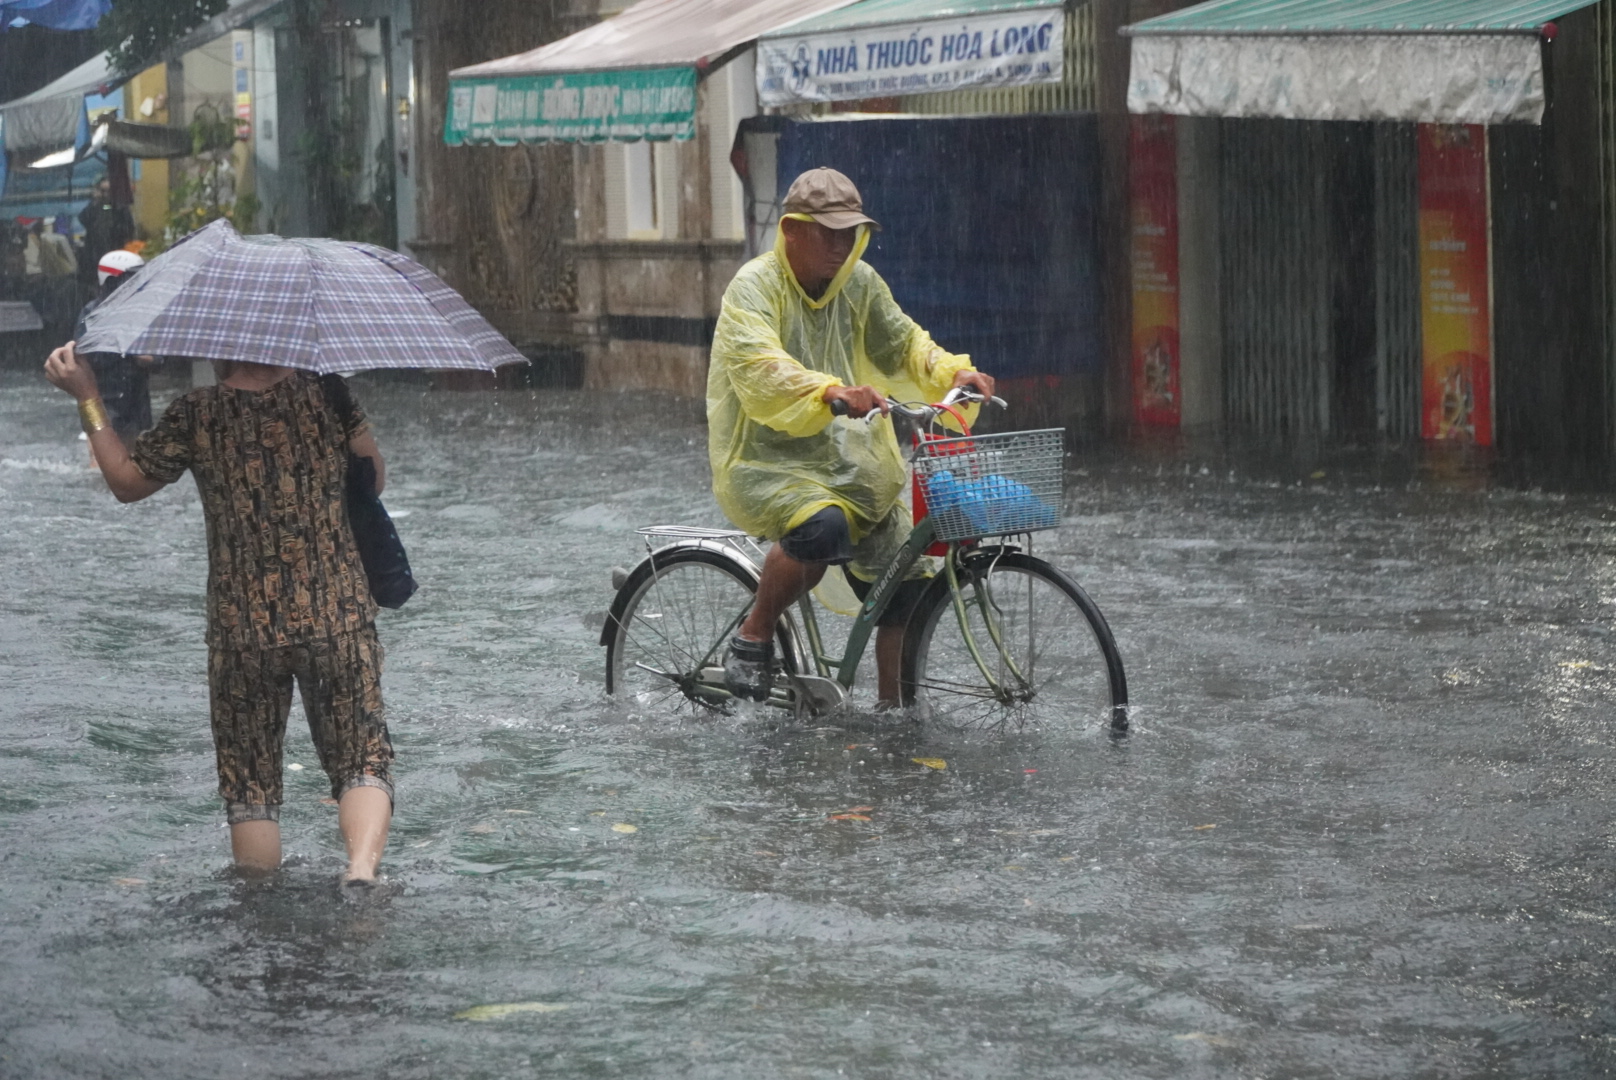 Ông Nguyễn Hòa - người dân sống gần khu vực này cho biết, đoạn đường này thường xuyên xảy ra tình trạng ngập sâu khi xuất hiện mưa lớn. “Từ thời điểm mặt đường Kinh Dương Vương được nâng lên là xuất hiện ngập tại đây“, ông Hòa nói.